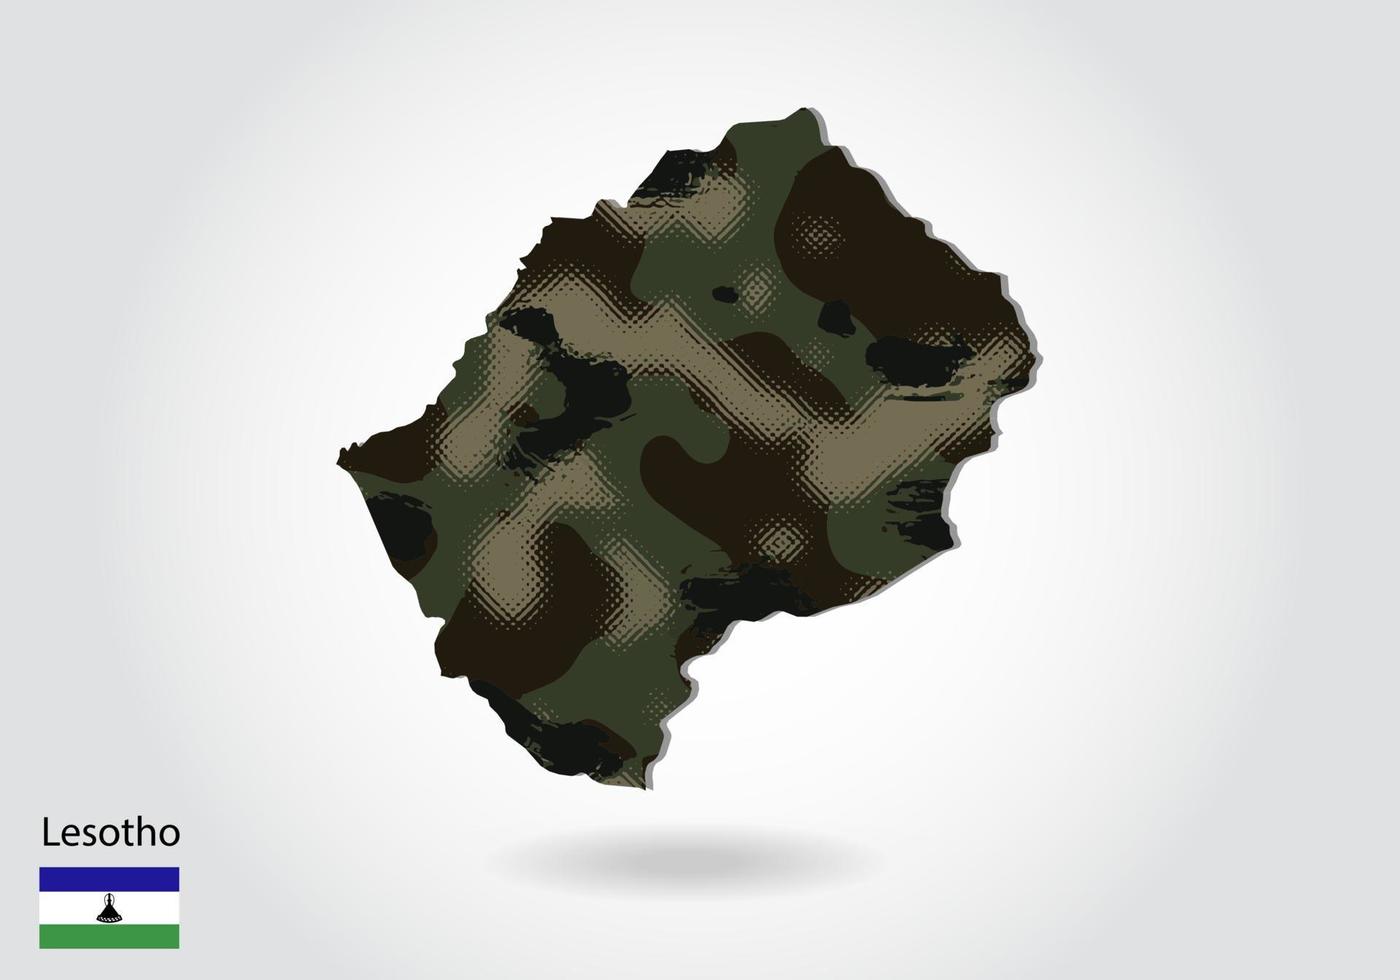 lesotho karta med kamouflagemönster, skog - grön struktur i kartan. militärt koncept för armé, soldat och krig. vapensköld, flagga. vektor